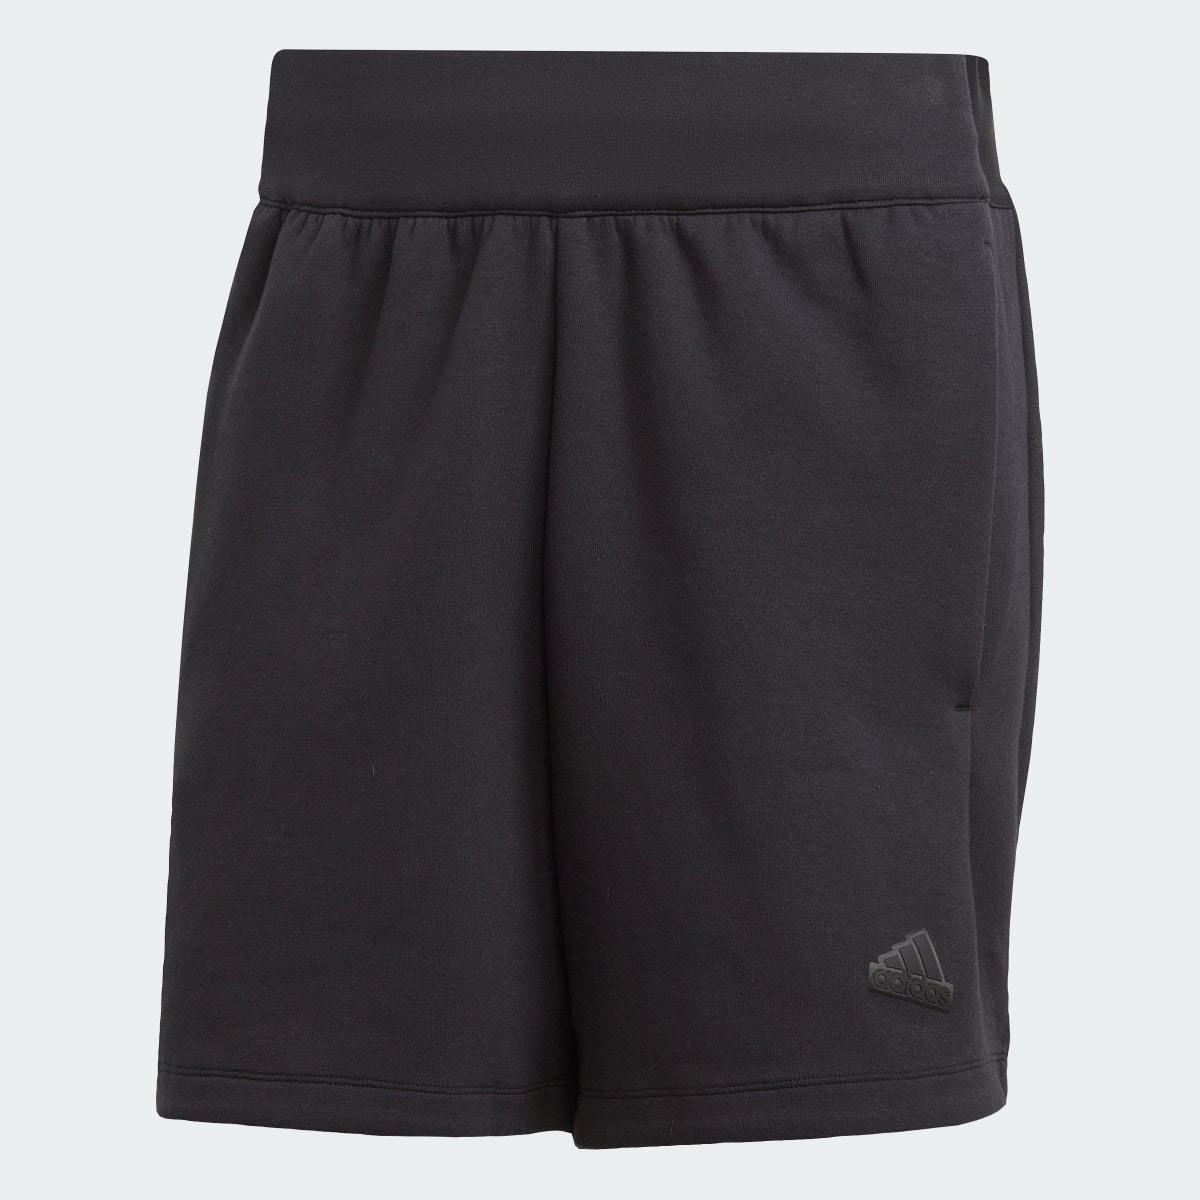 Adidas Z.N.E. Premium Shorts. 4